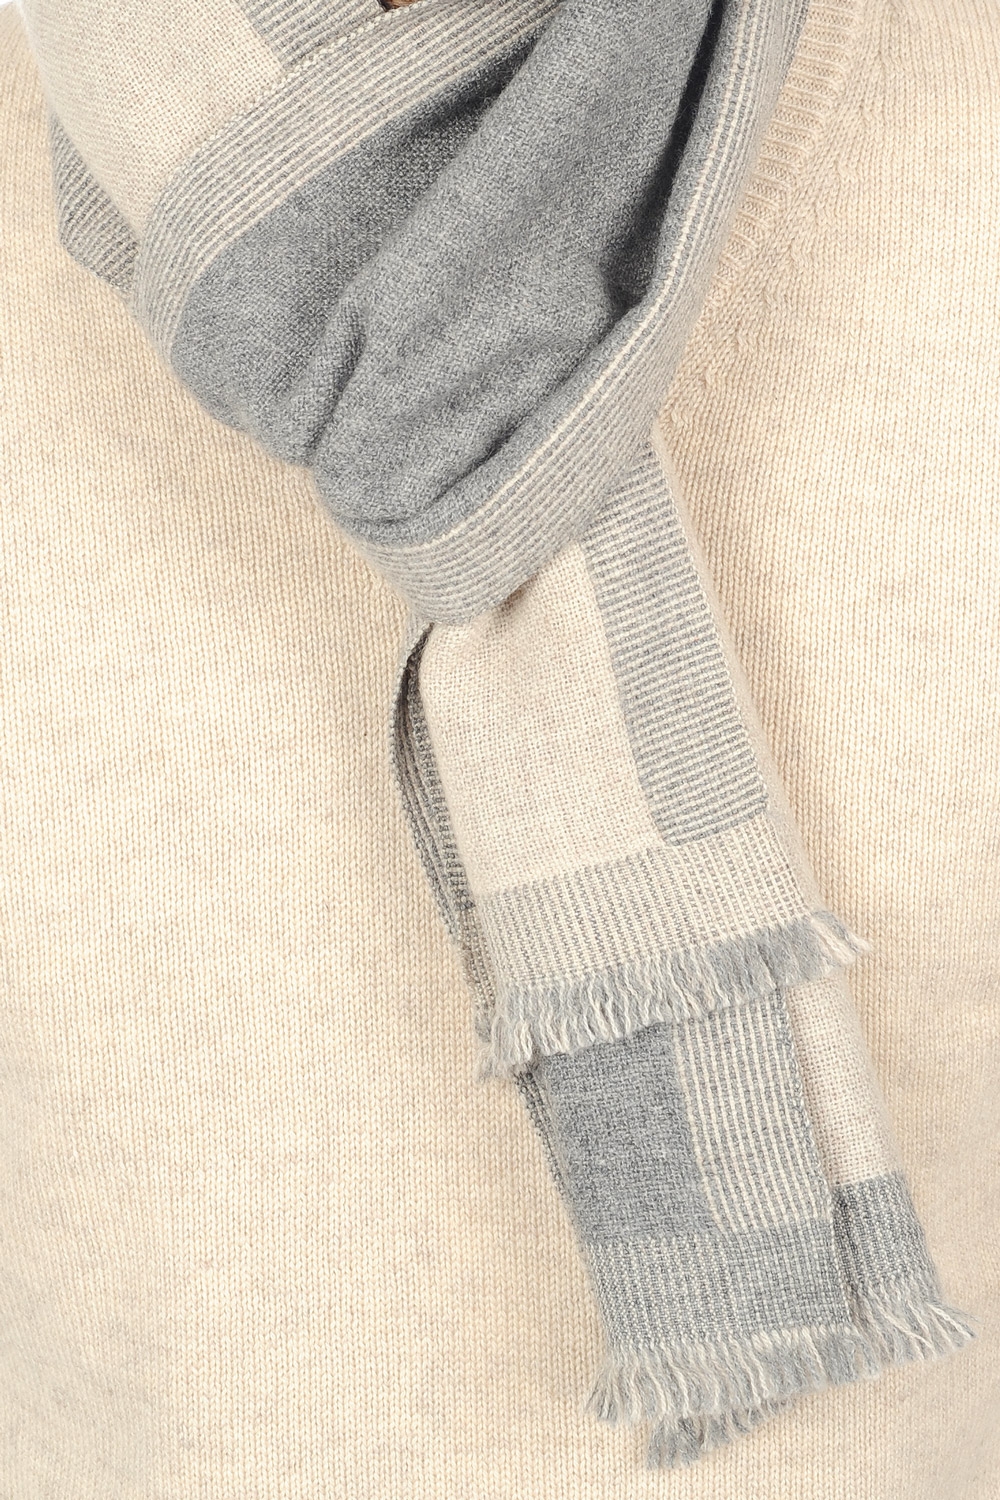 Cachemire accessoires echarpes cheches tonnerre gris chine beige intemporel 180 x 24 cm